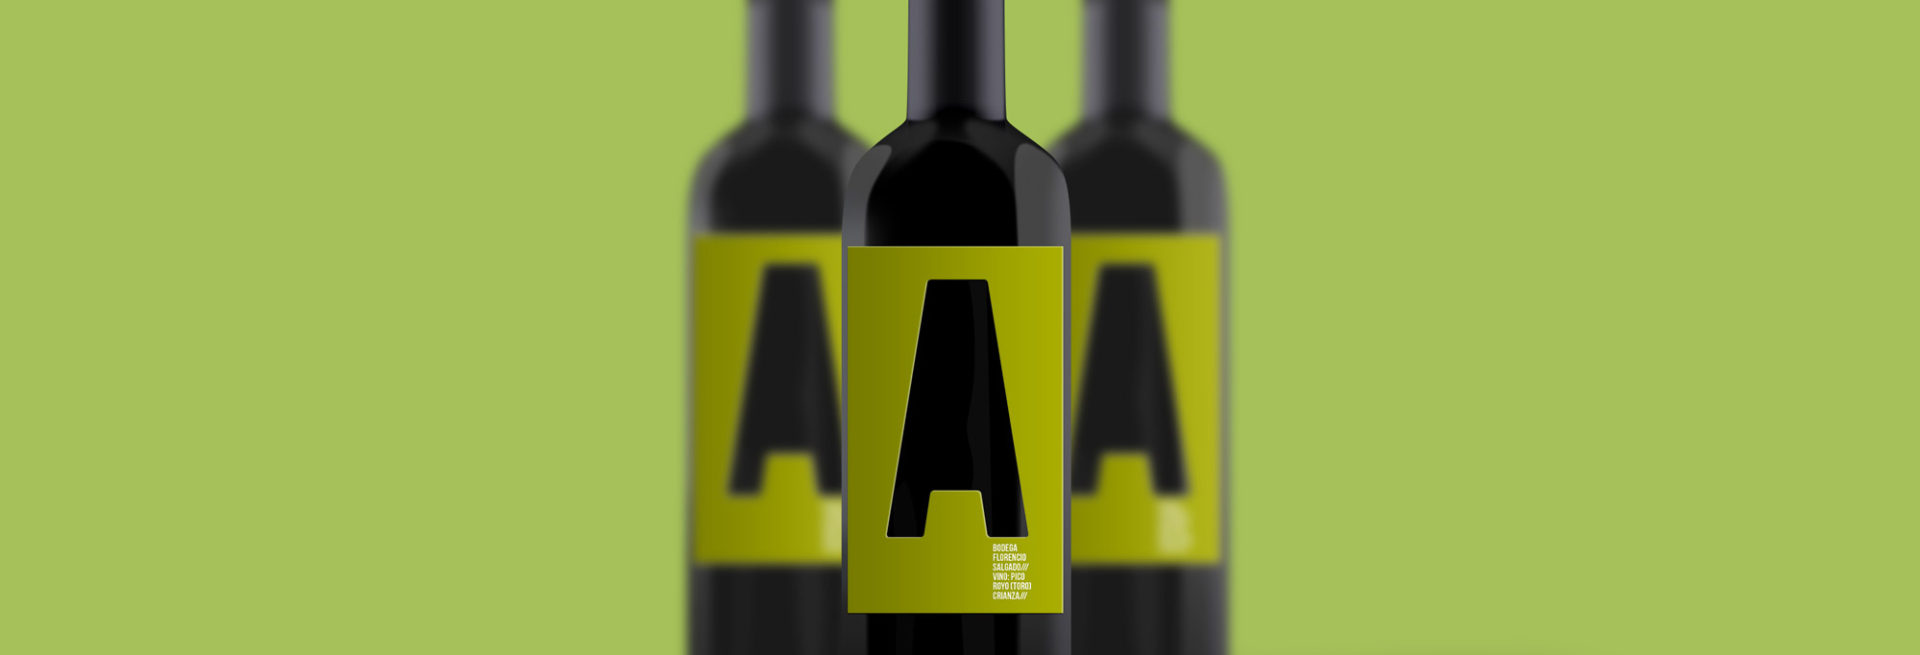 wine-bottle-klab-1920×655